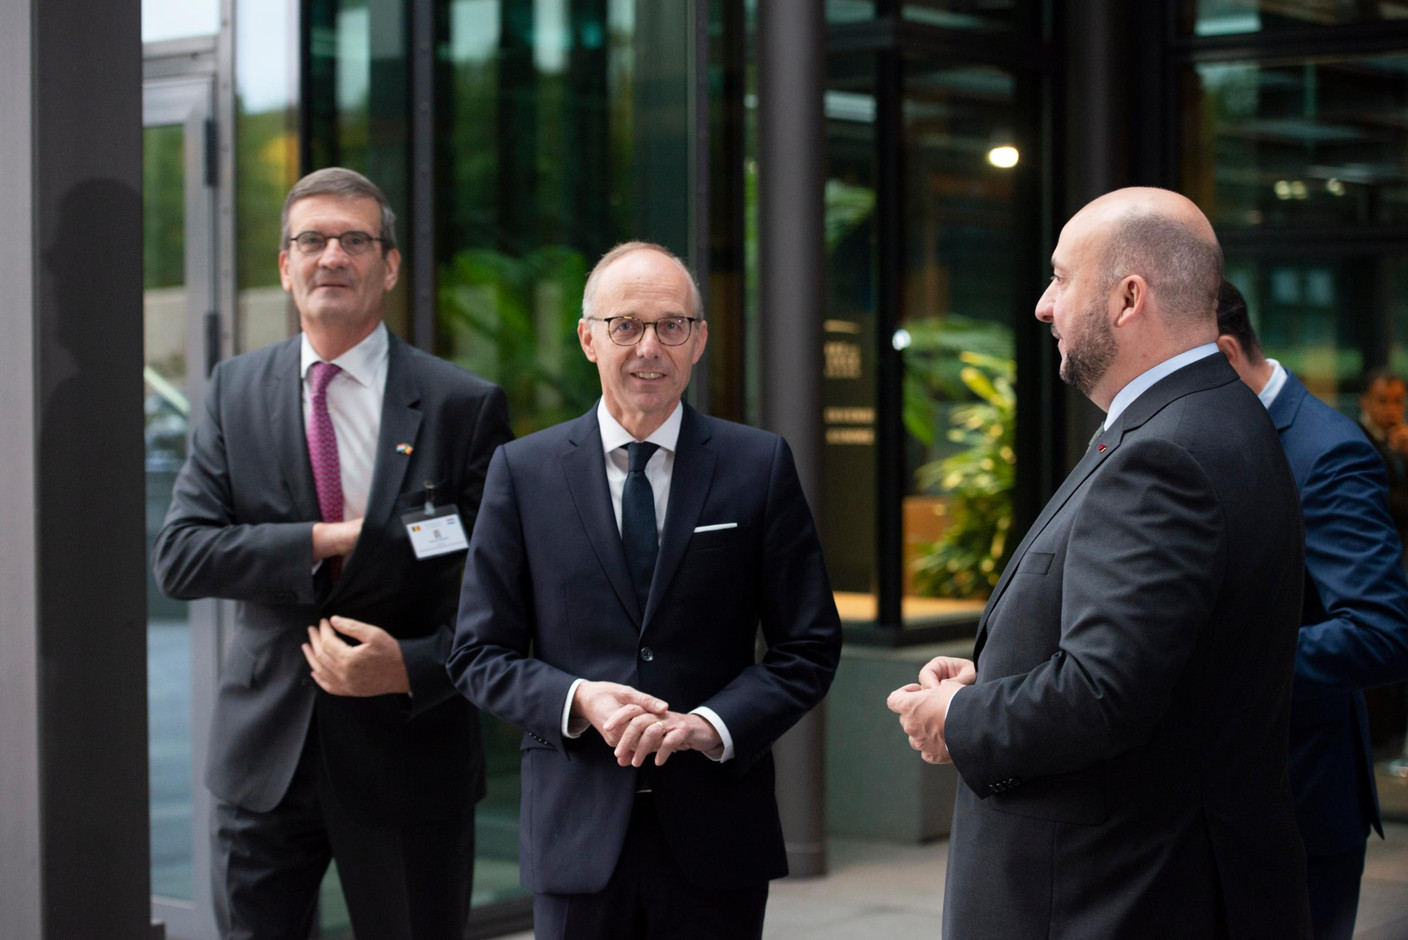 Bernard Gilliot (Fédération des entreprises de Belgique), Luc Frieden (Chambre de commerce) et Étienne Schneider (vice-Premier ministre). (Photo: Anthony Dehez)